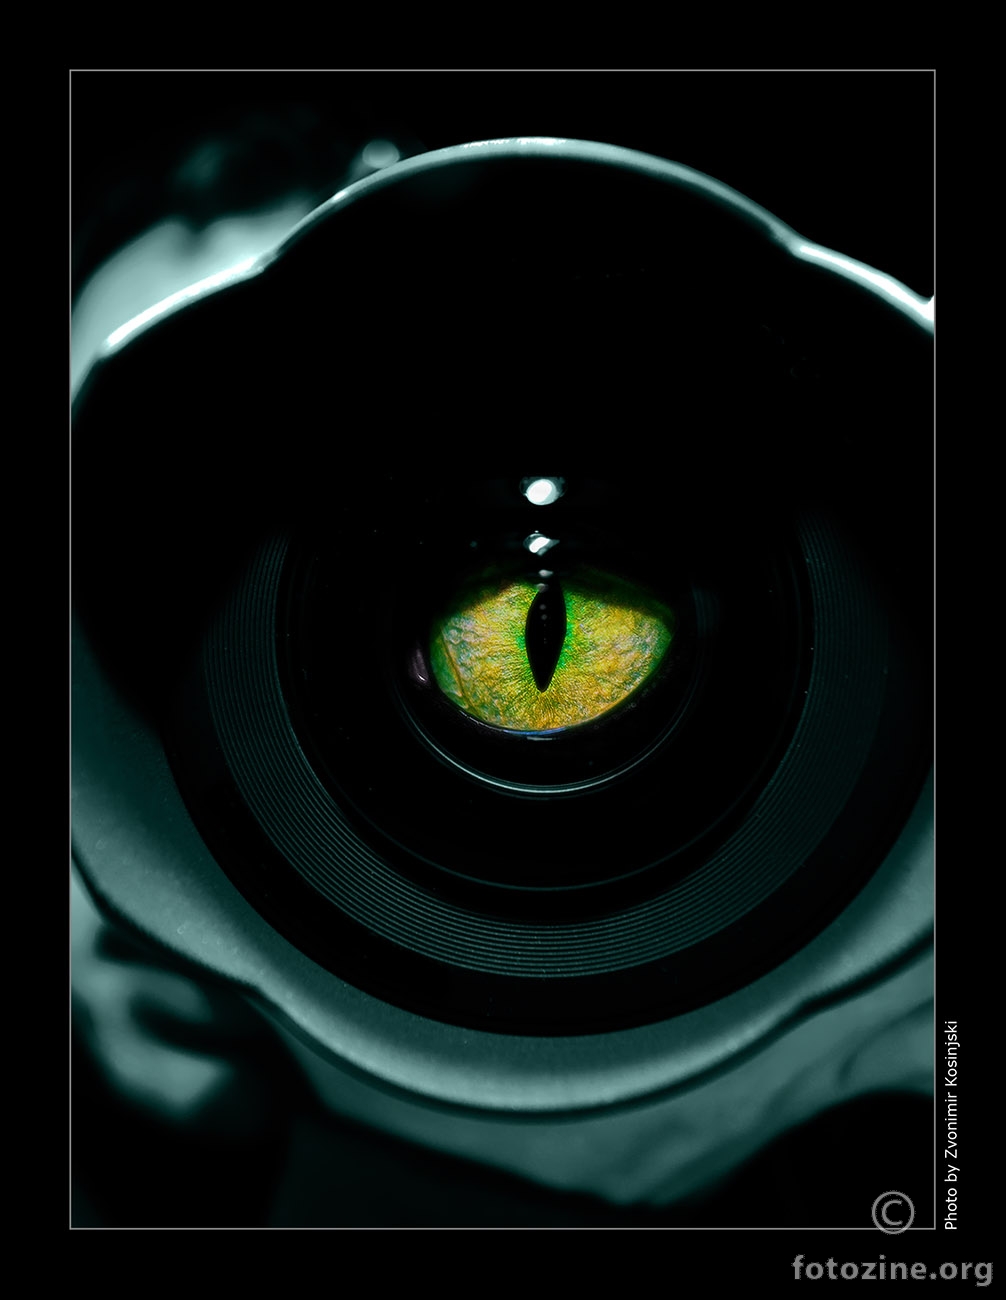 photographer's eye